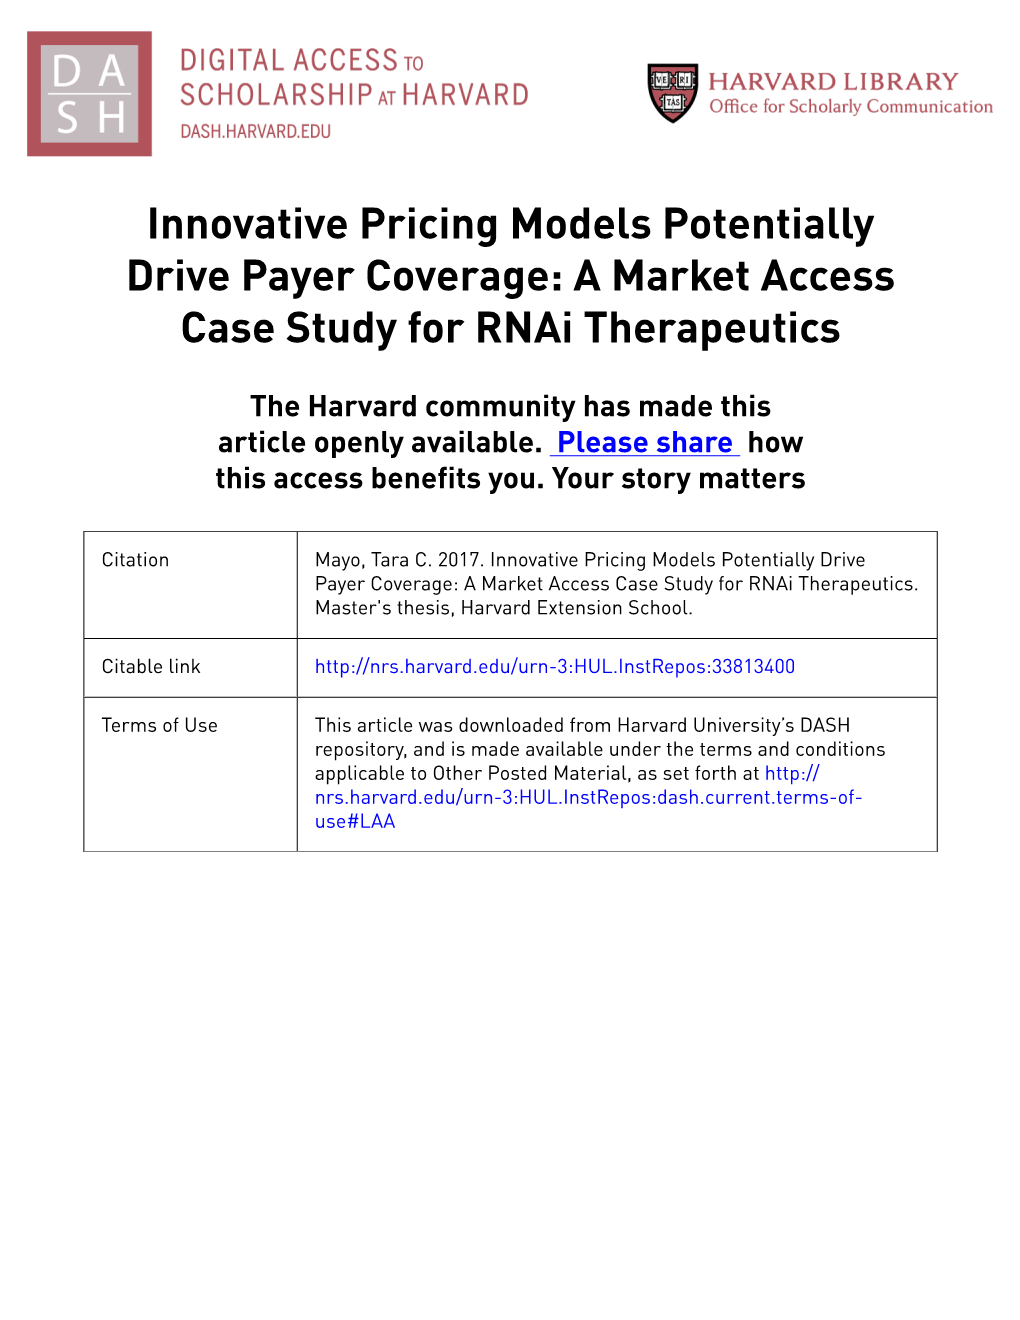 A Market Access Case Study for Rnai Therapeutics